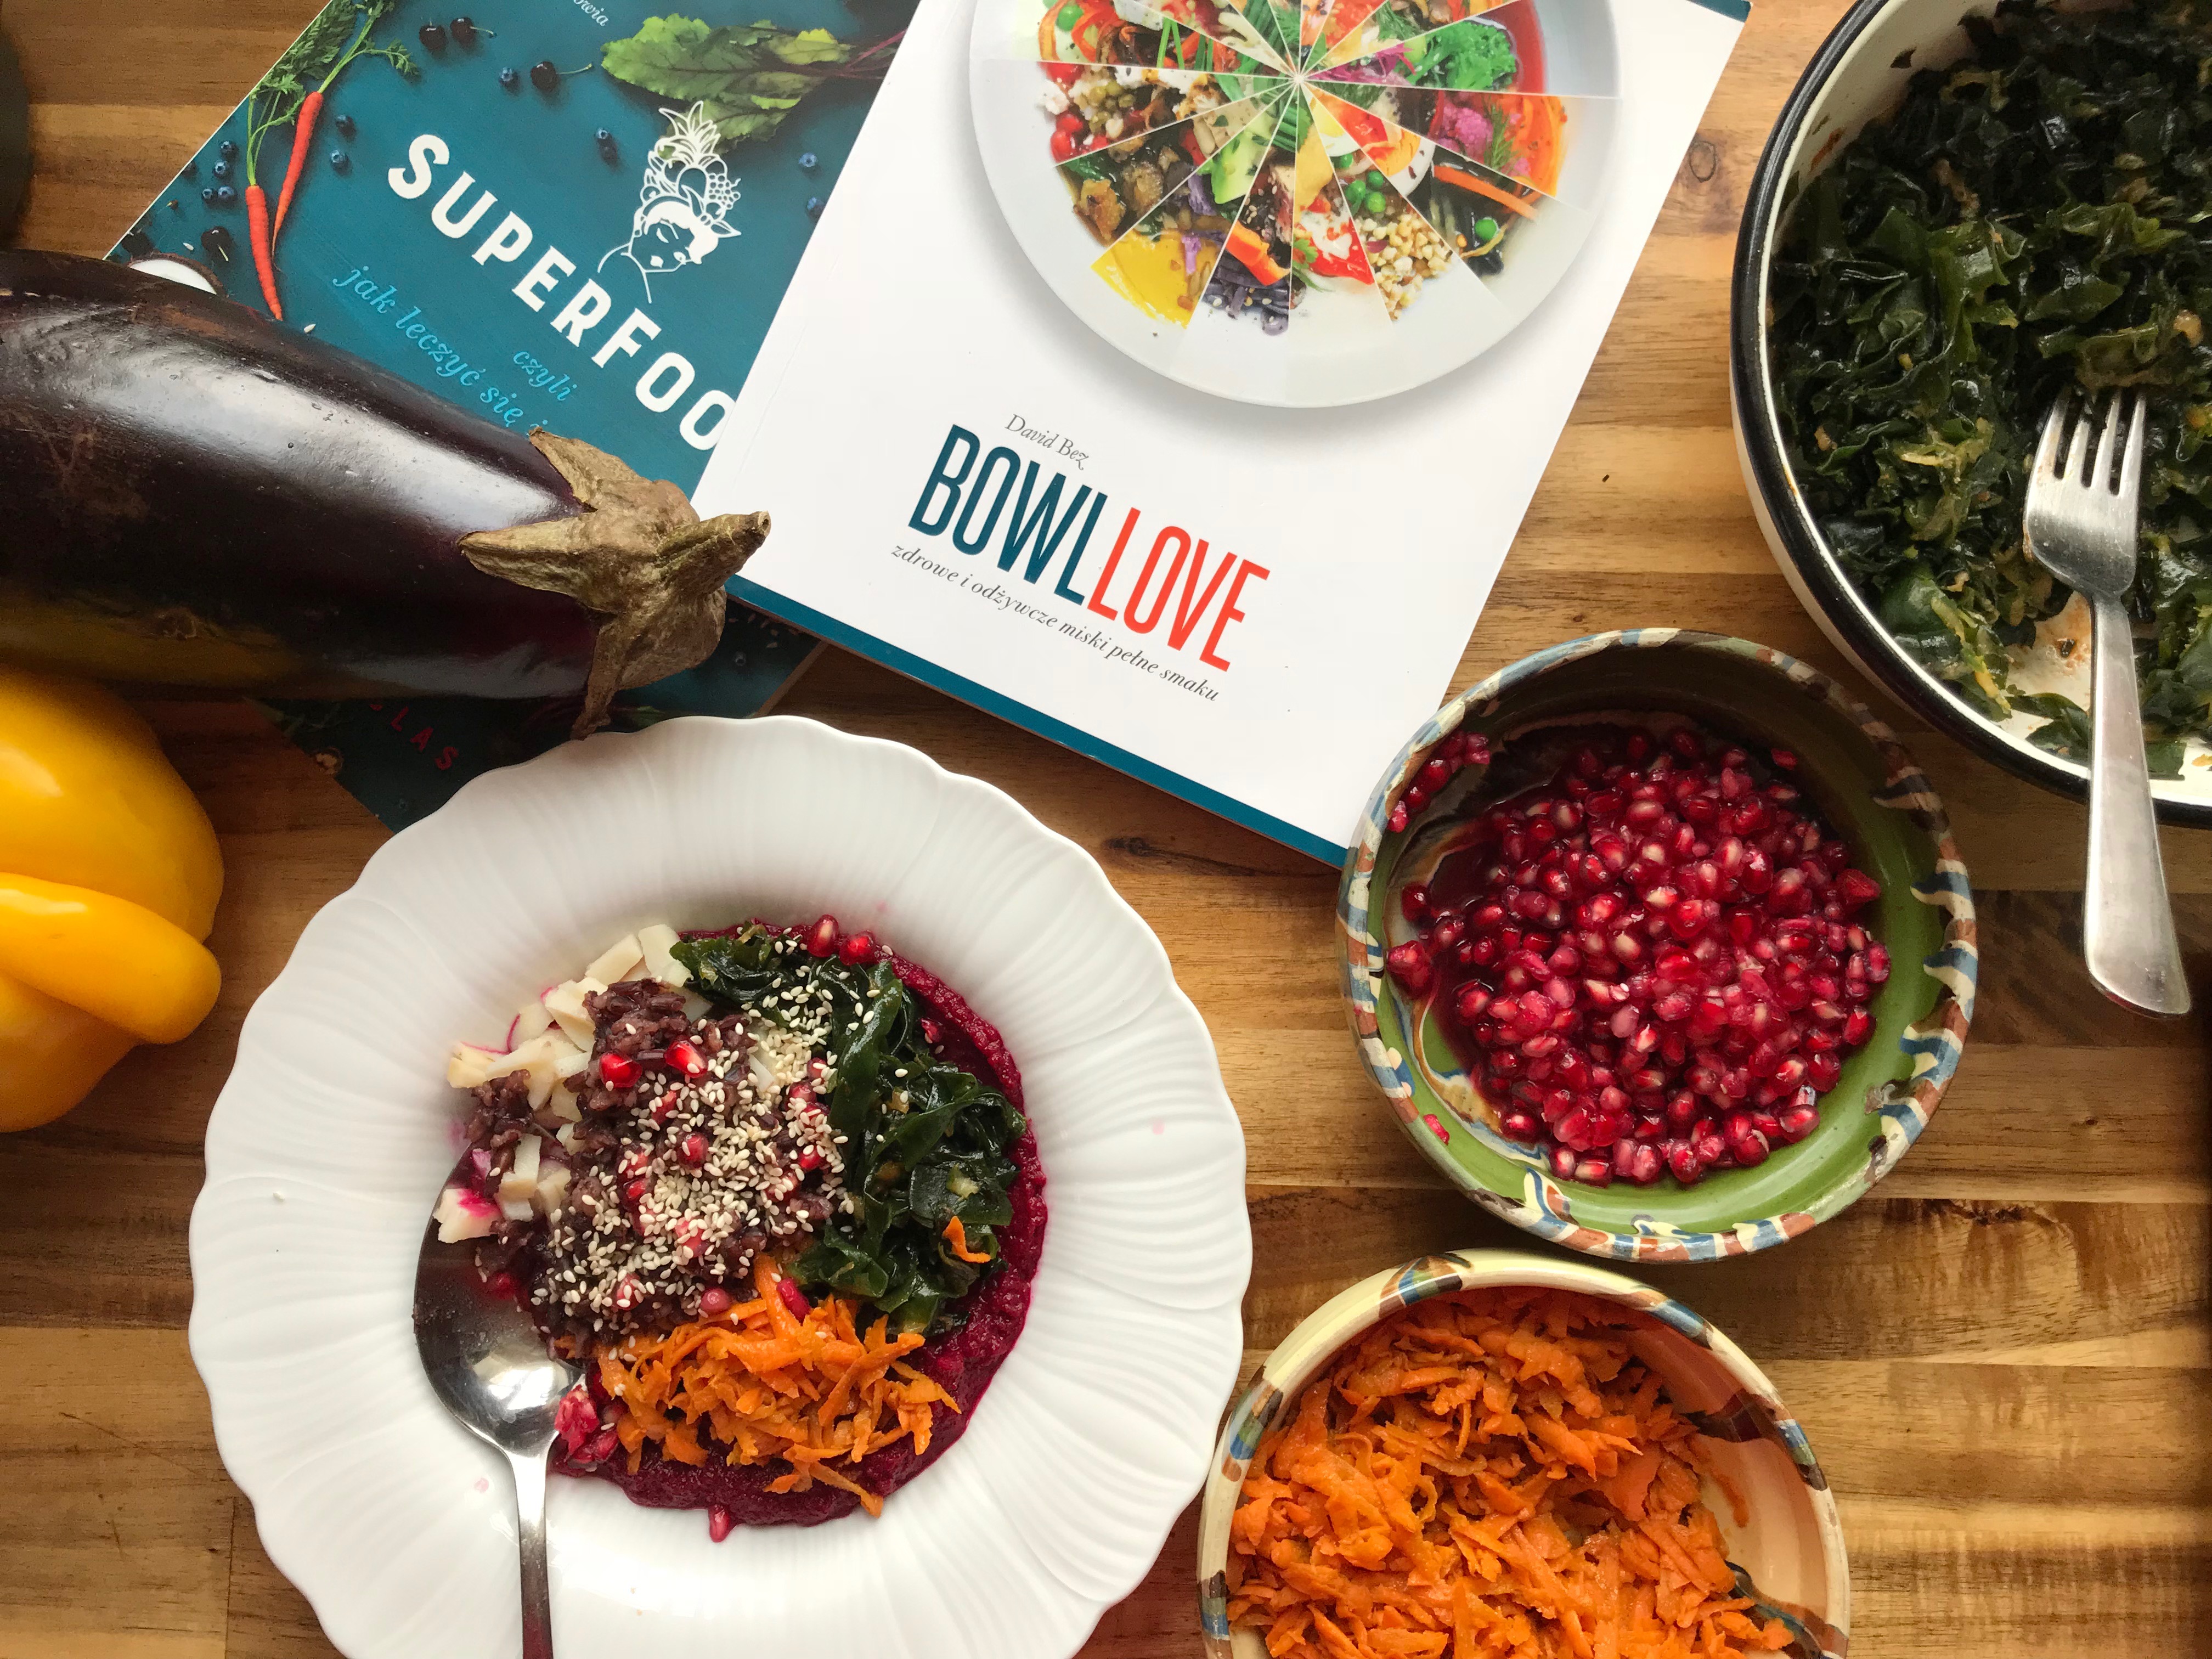 Książki na zdrowie: Bowllove i Superfood